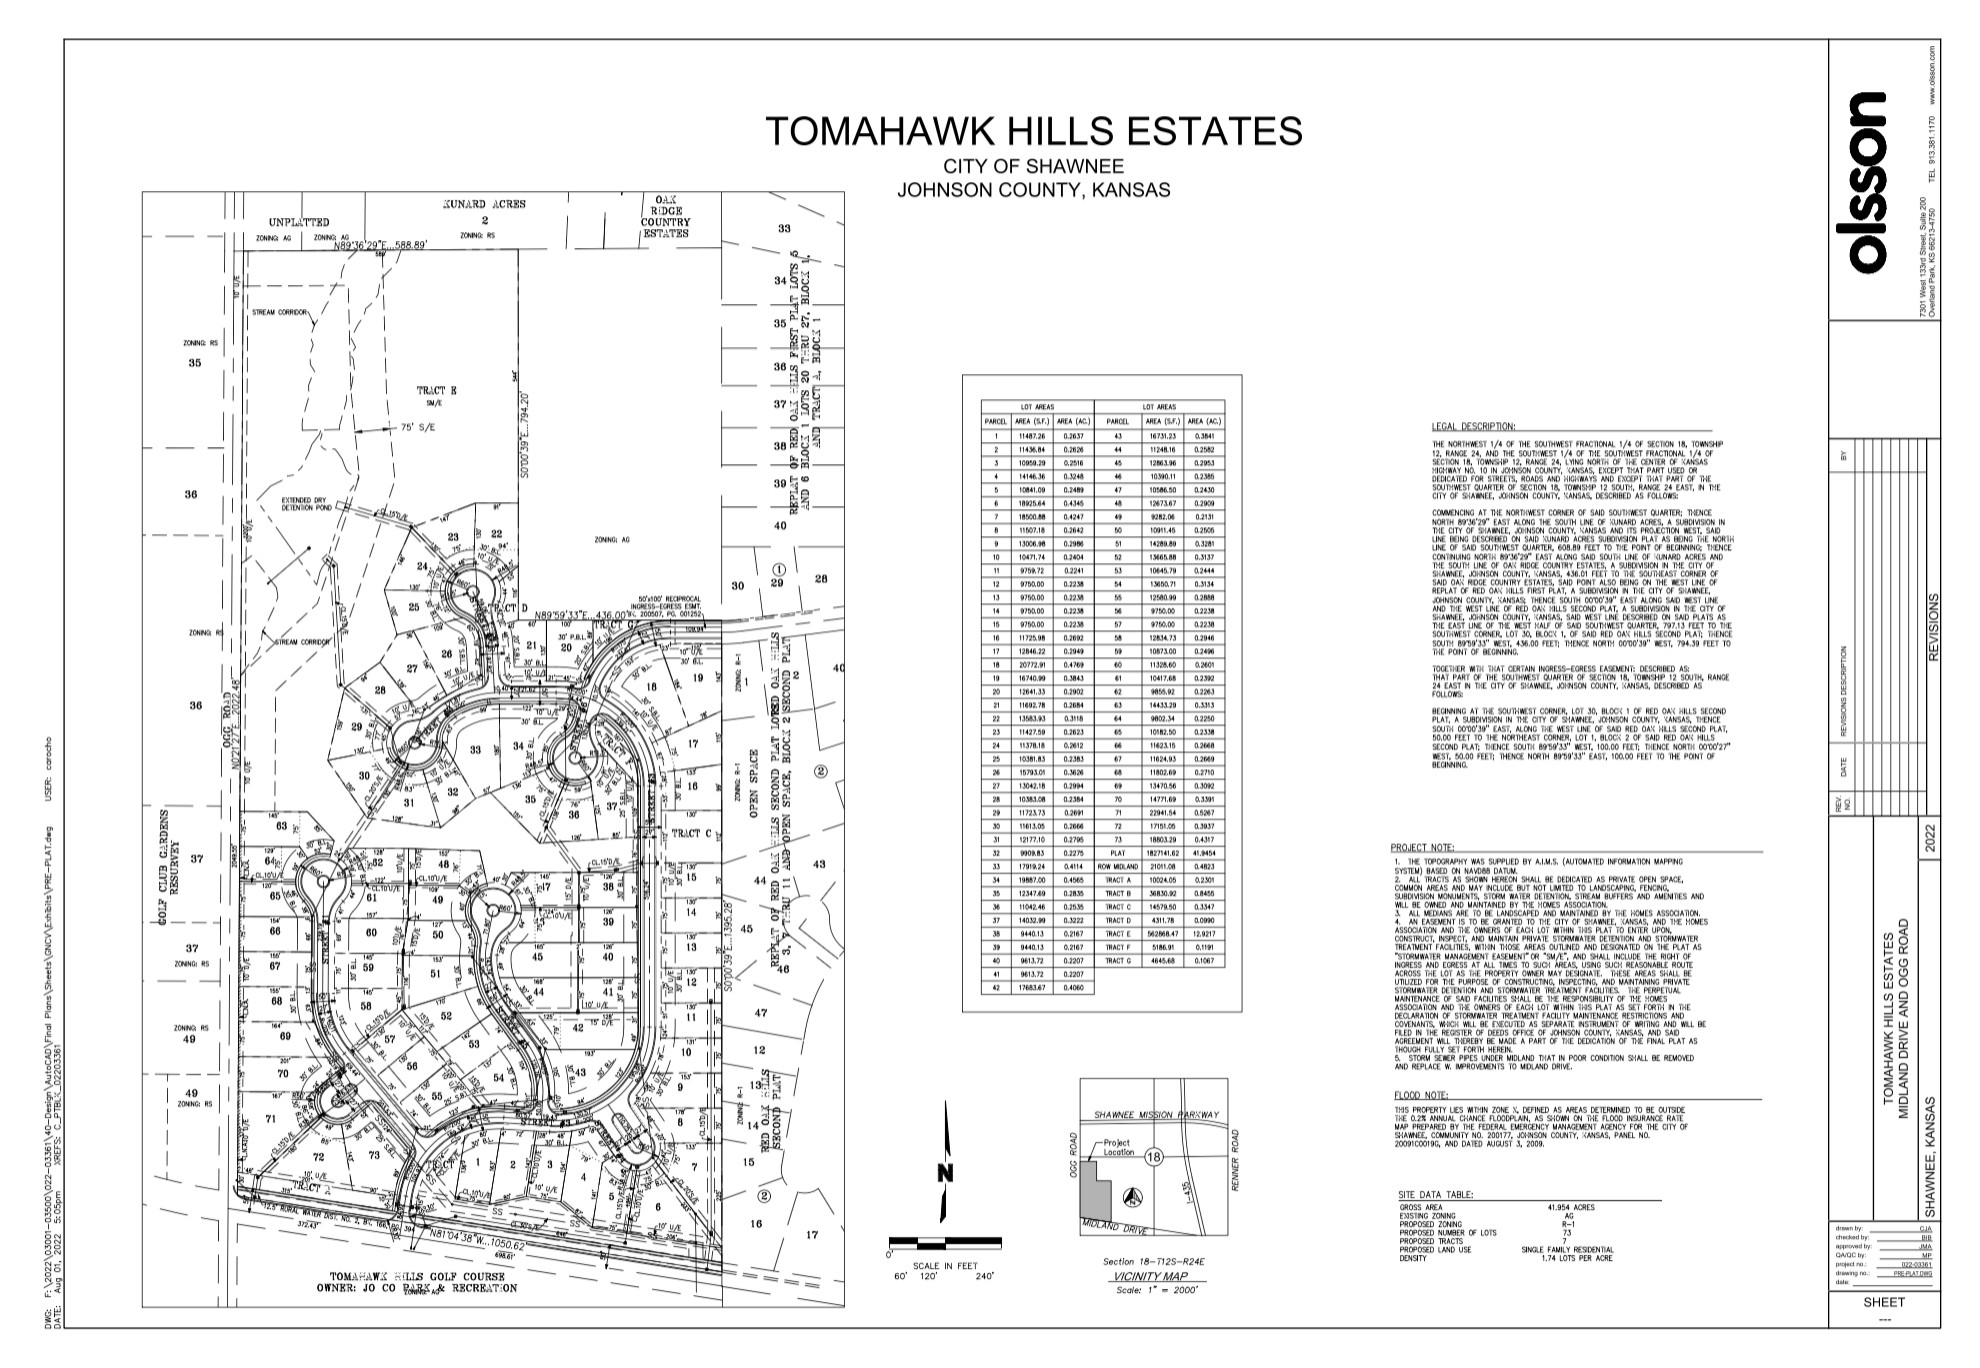 Tomahawk Hills Estates Development, Shawnee, KS